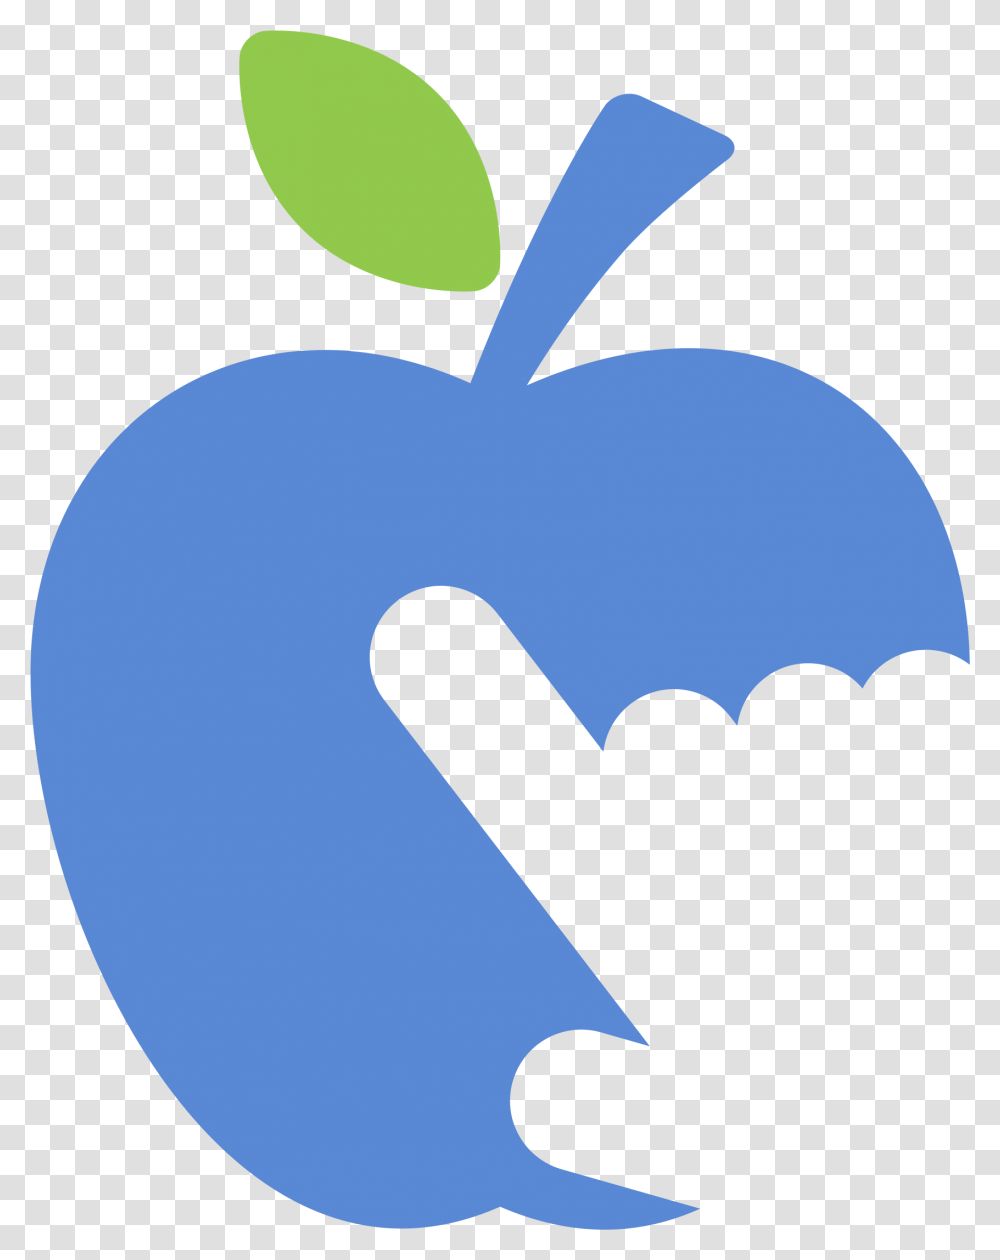 Apple Logo Hi Resolution Bing Images Download, Hand, Plant, Label Transparent Png